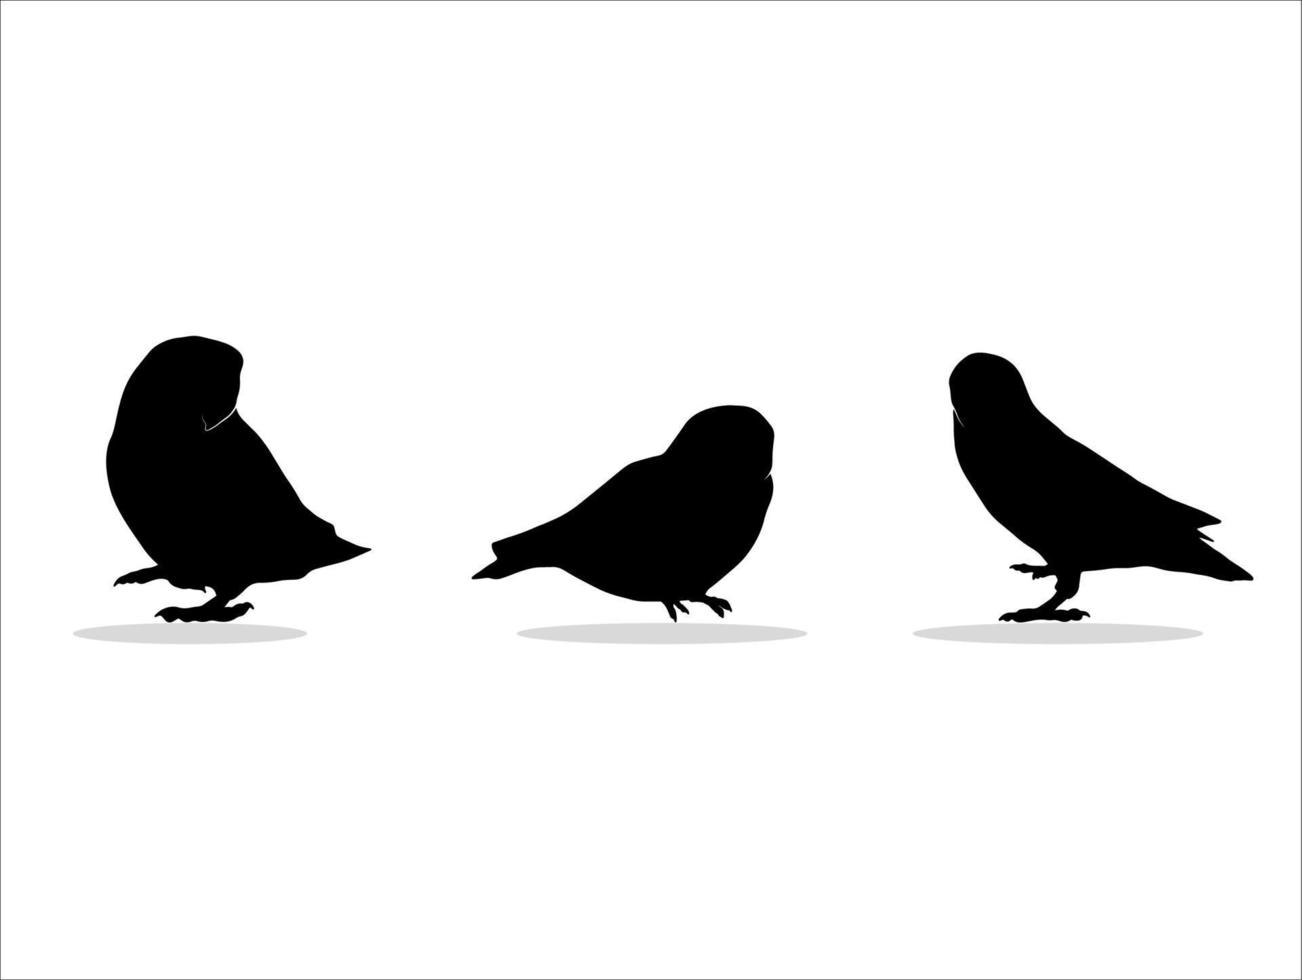 três ilustrações de silhueta de pássaro preto vetor